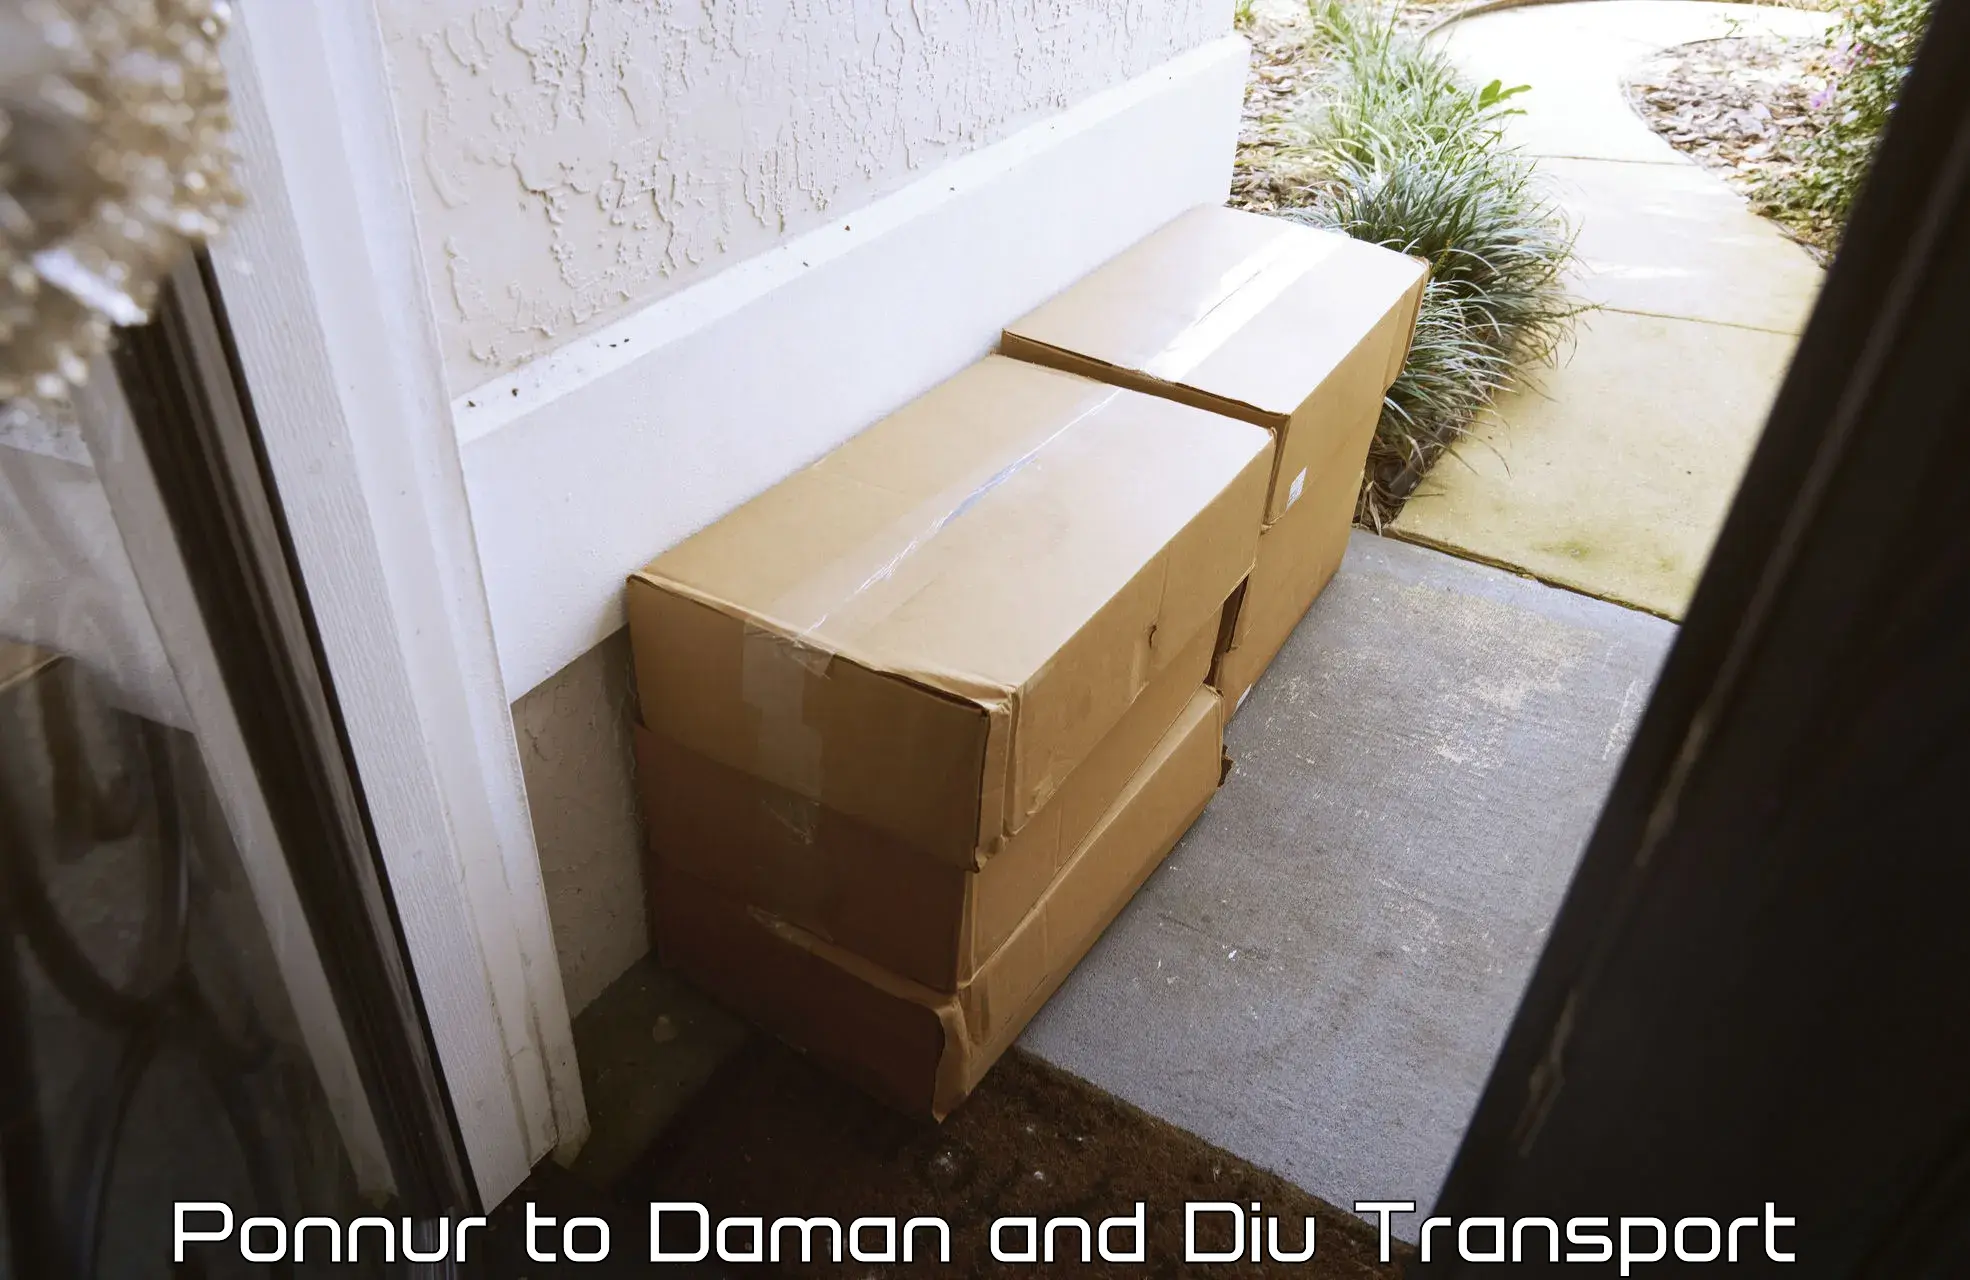 Cargo transportation services Ponnur to Diu